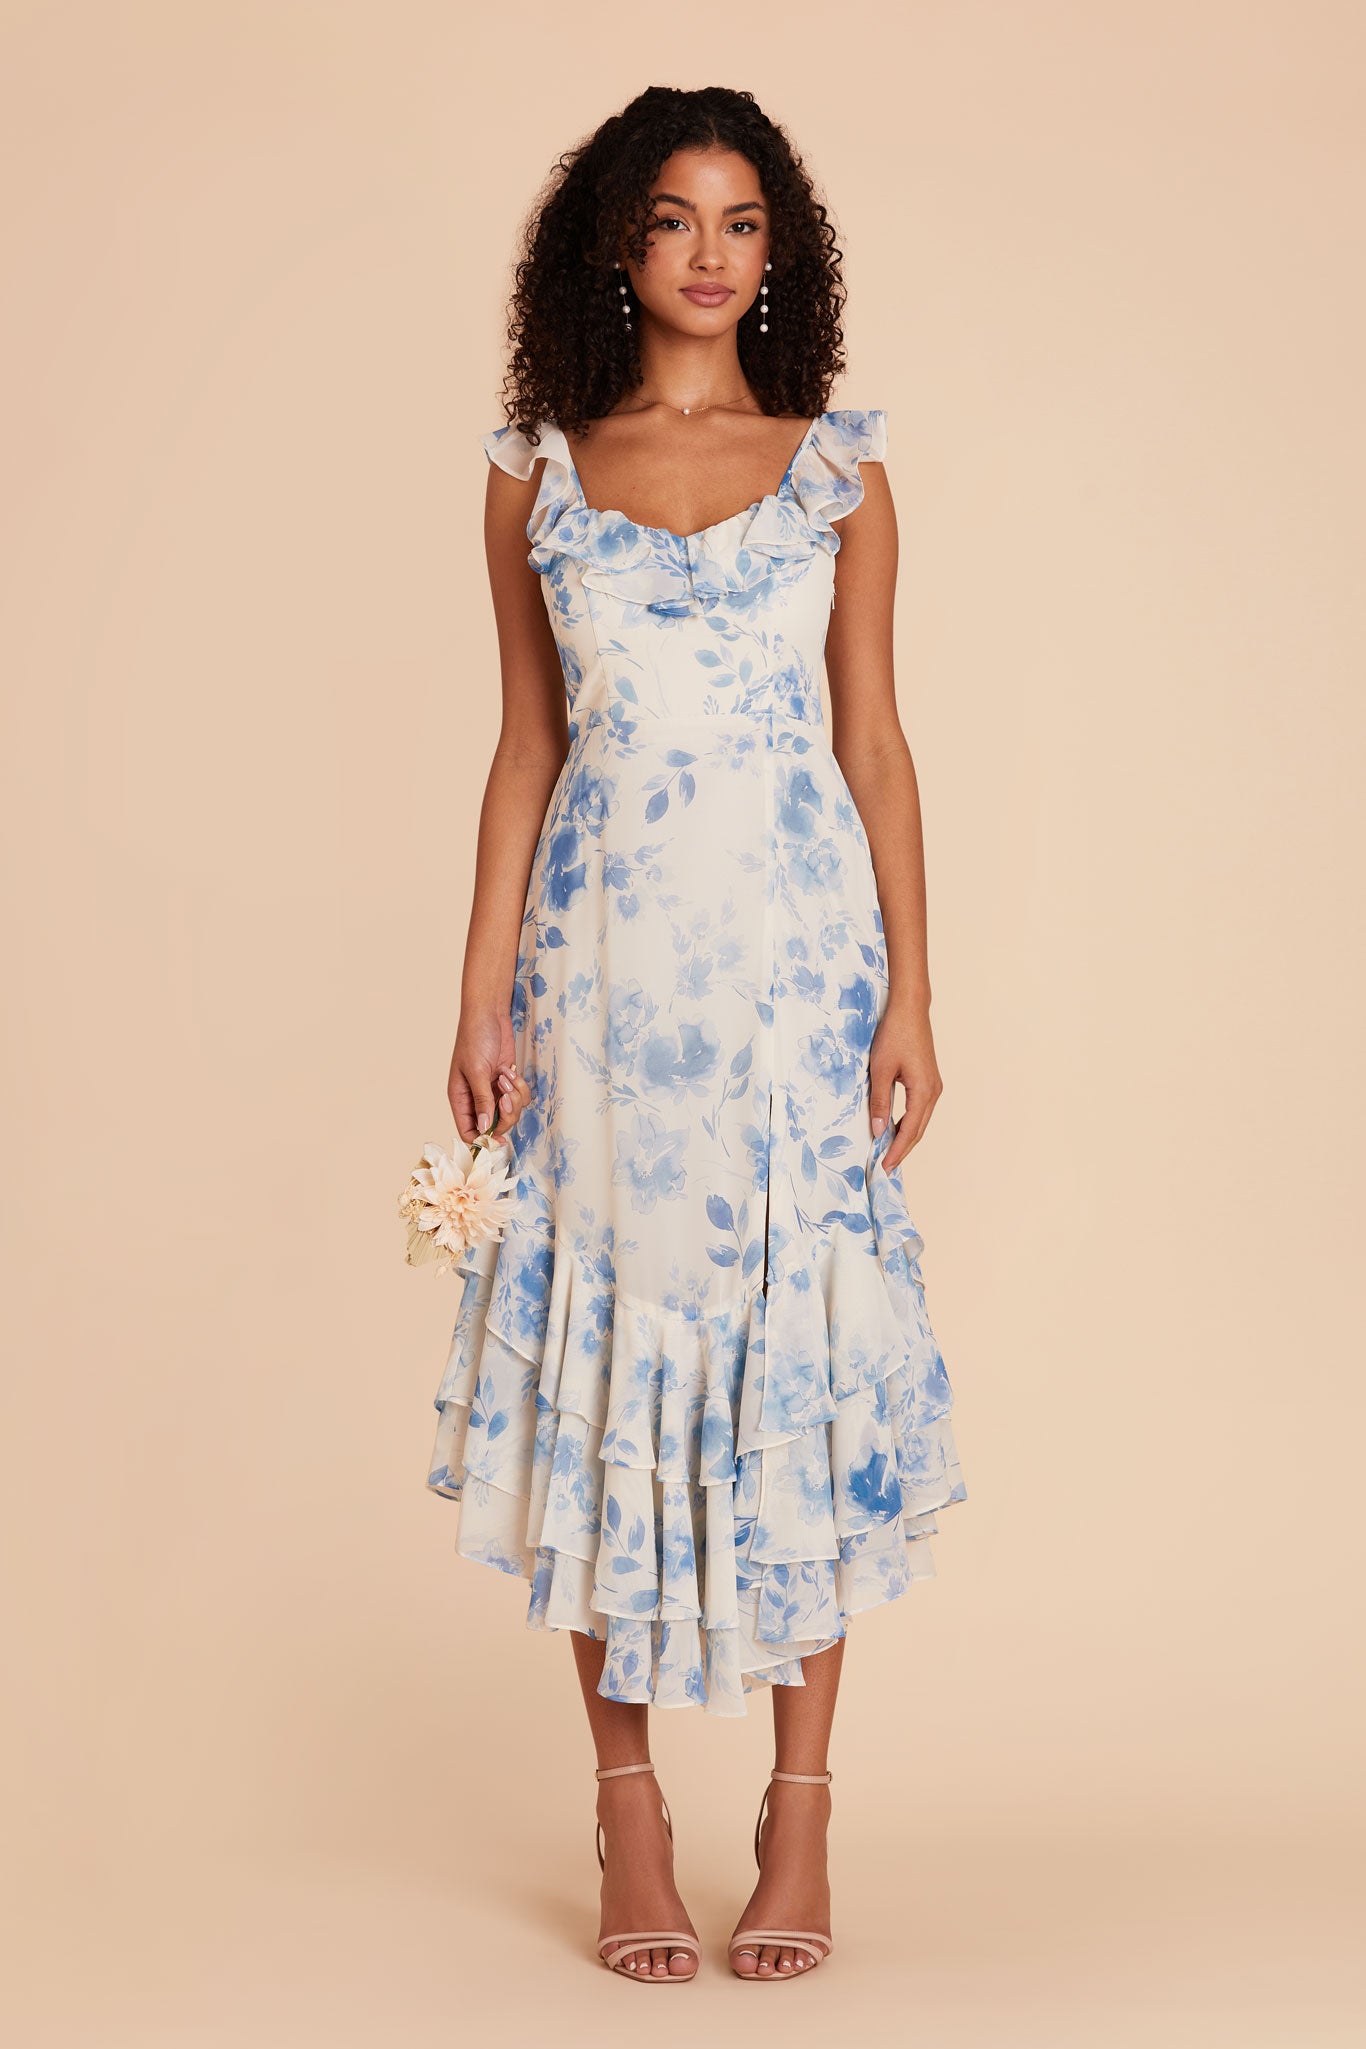 Blue Rococo Floral Ginny Chiffon Dress by Birdy Grey